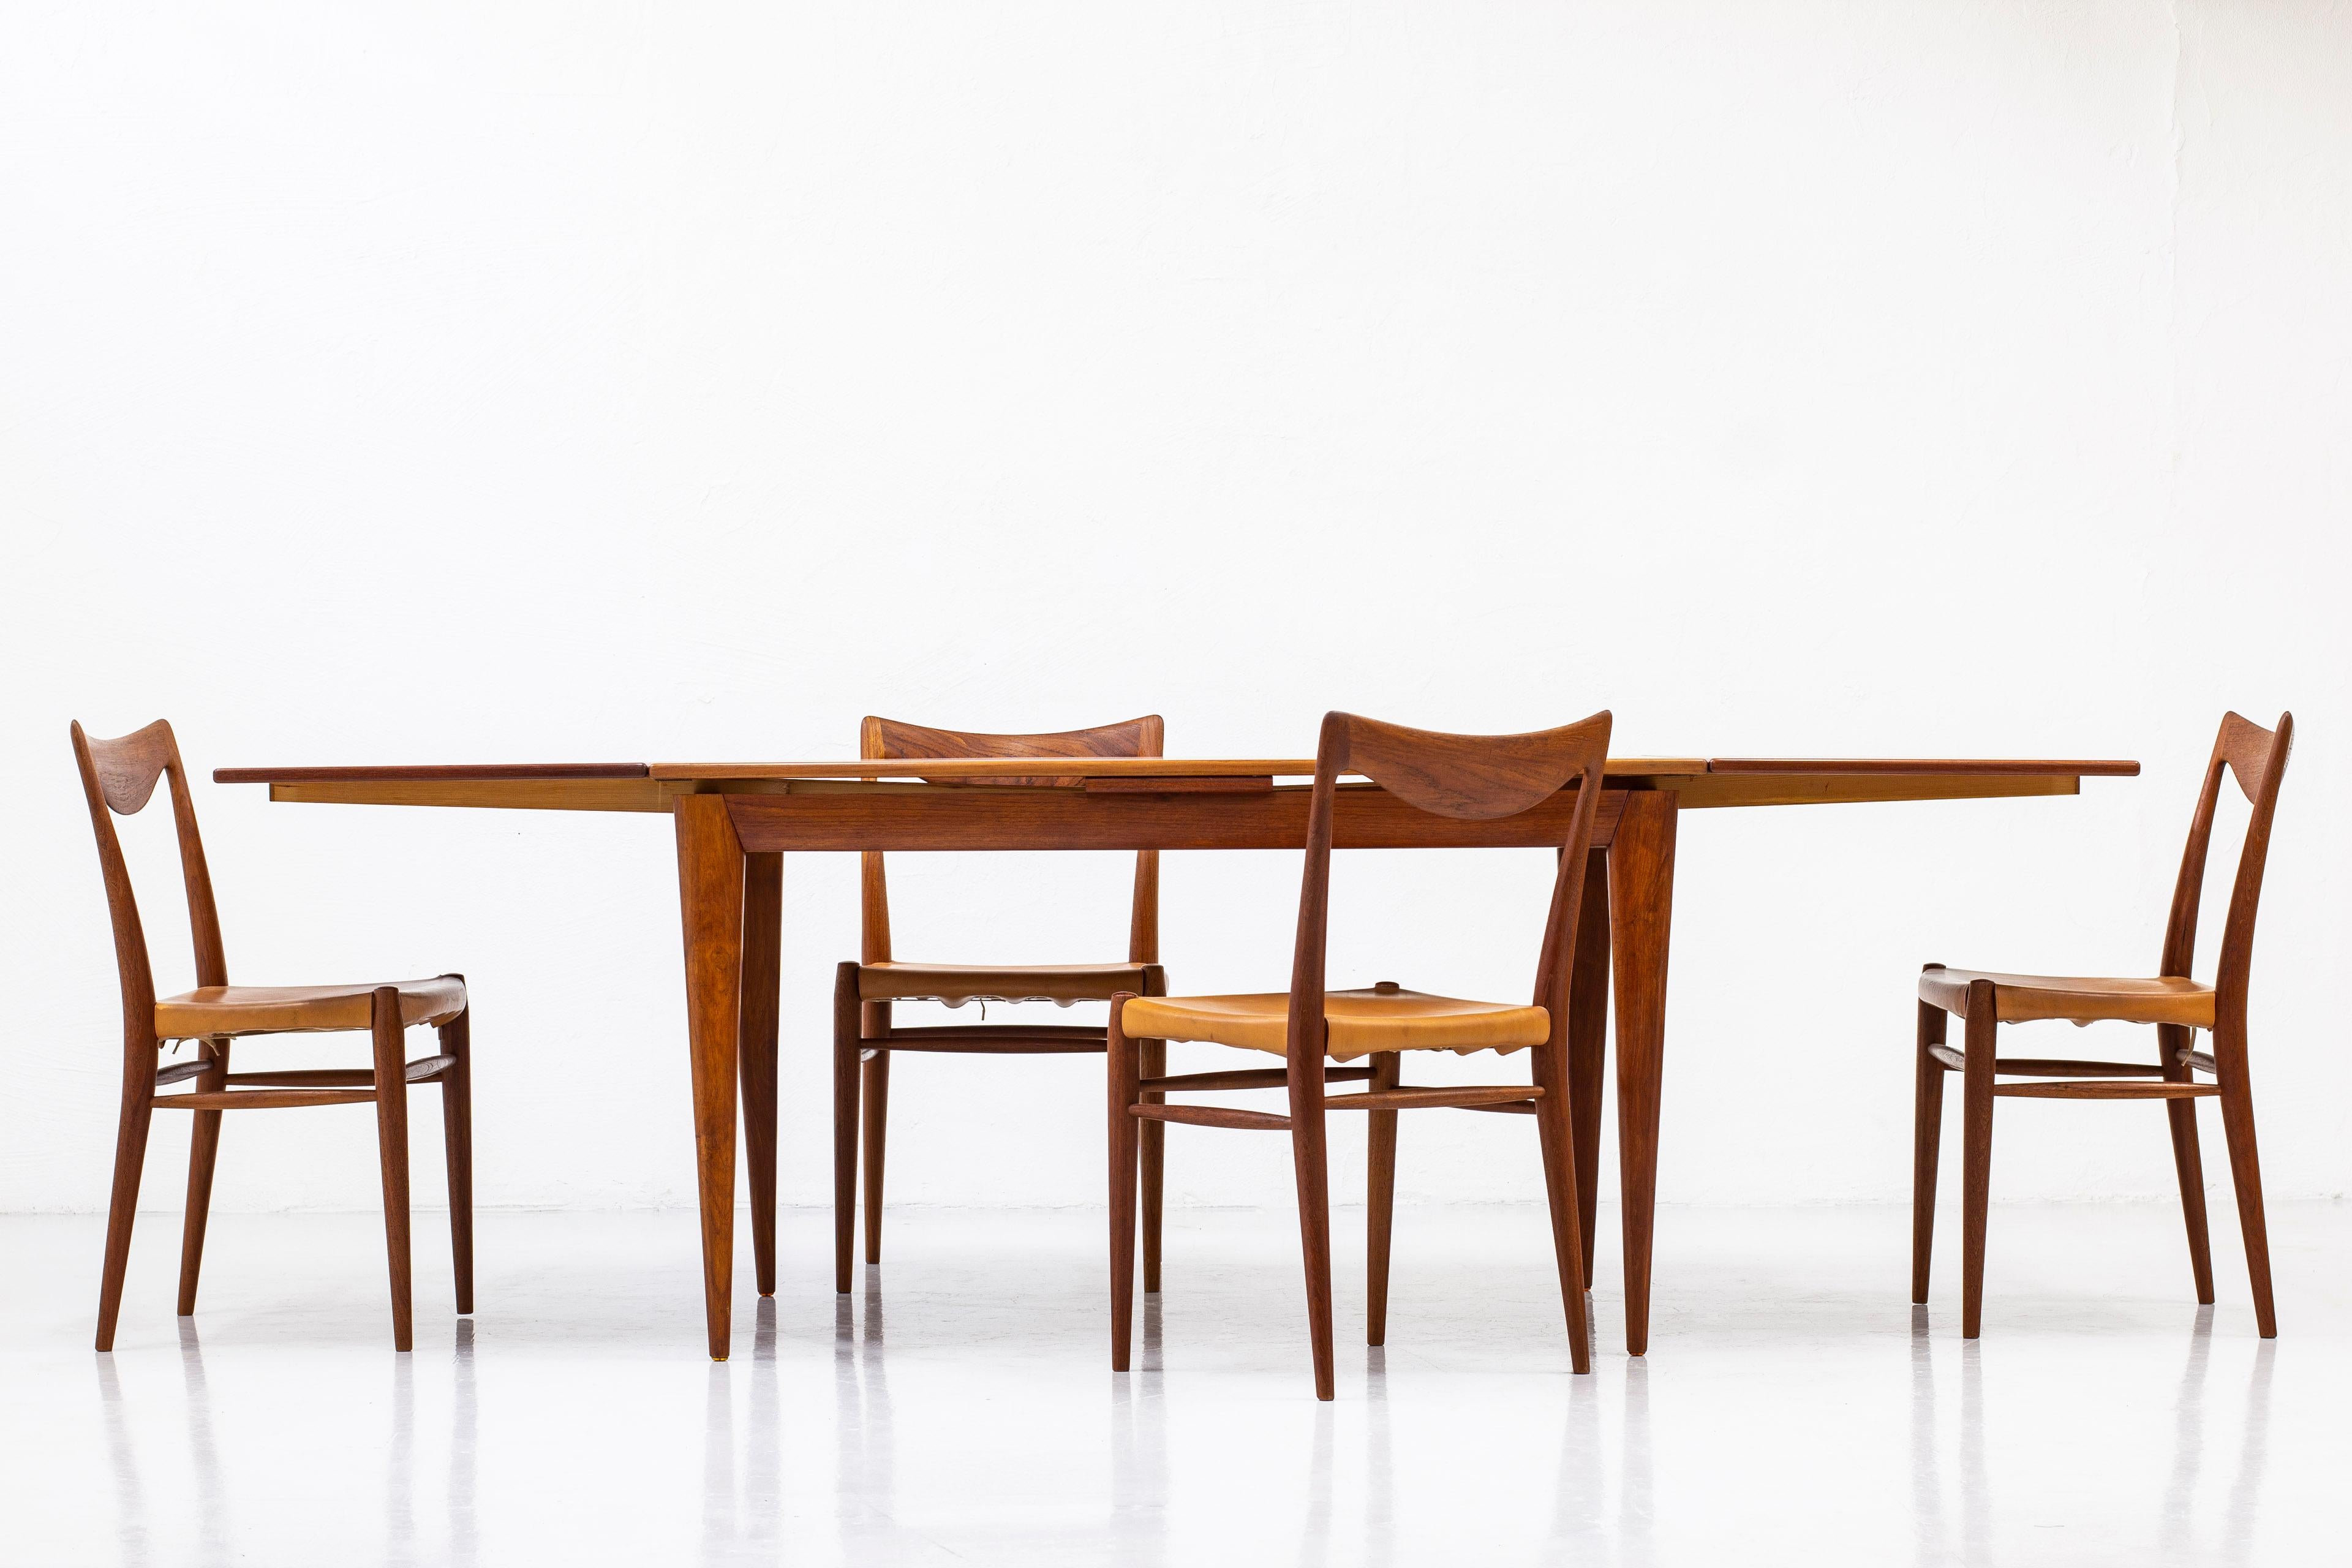 Scandinavian Modern Extendable Dining Table in Teak by Niels Møller Fro J. L. Møller, Denmark, 1950s For Sale